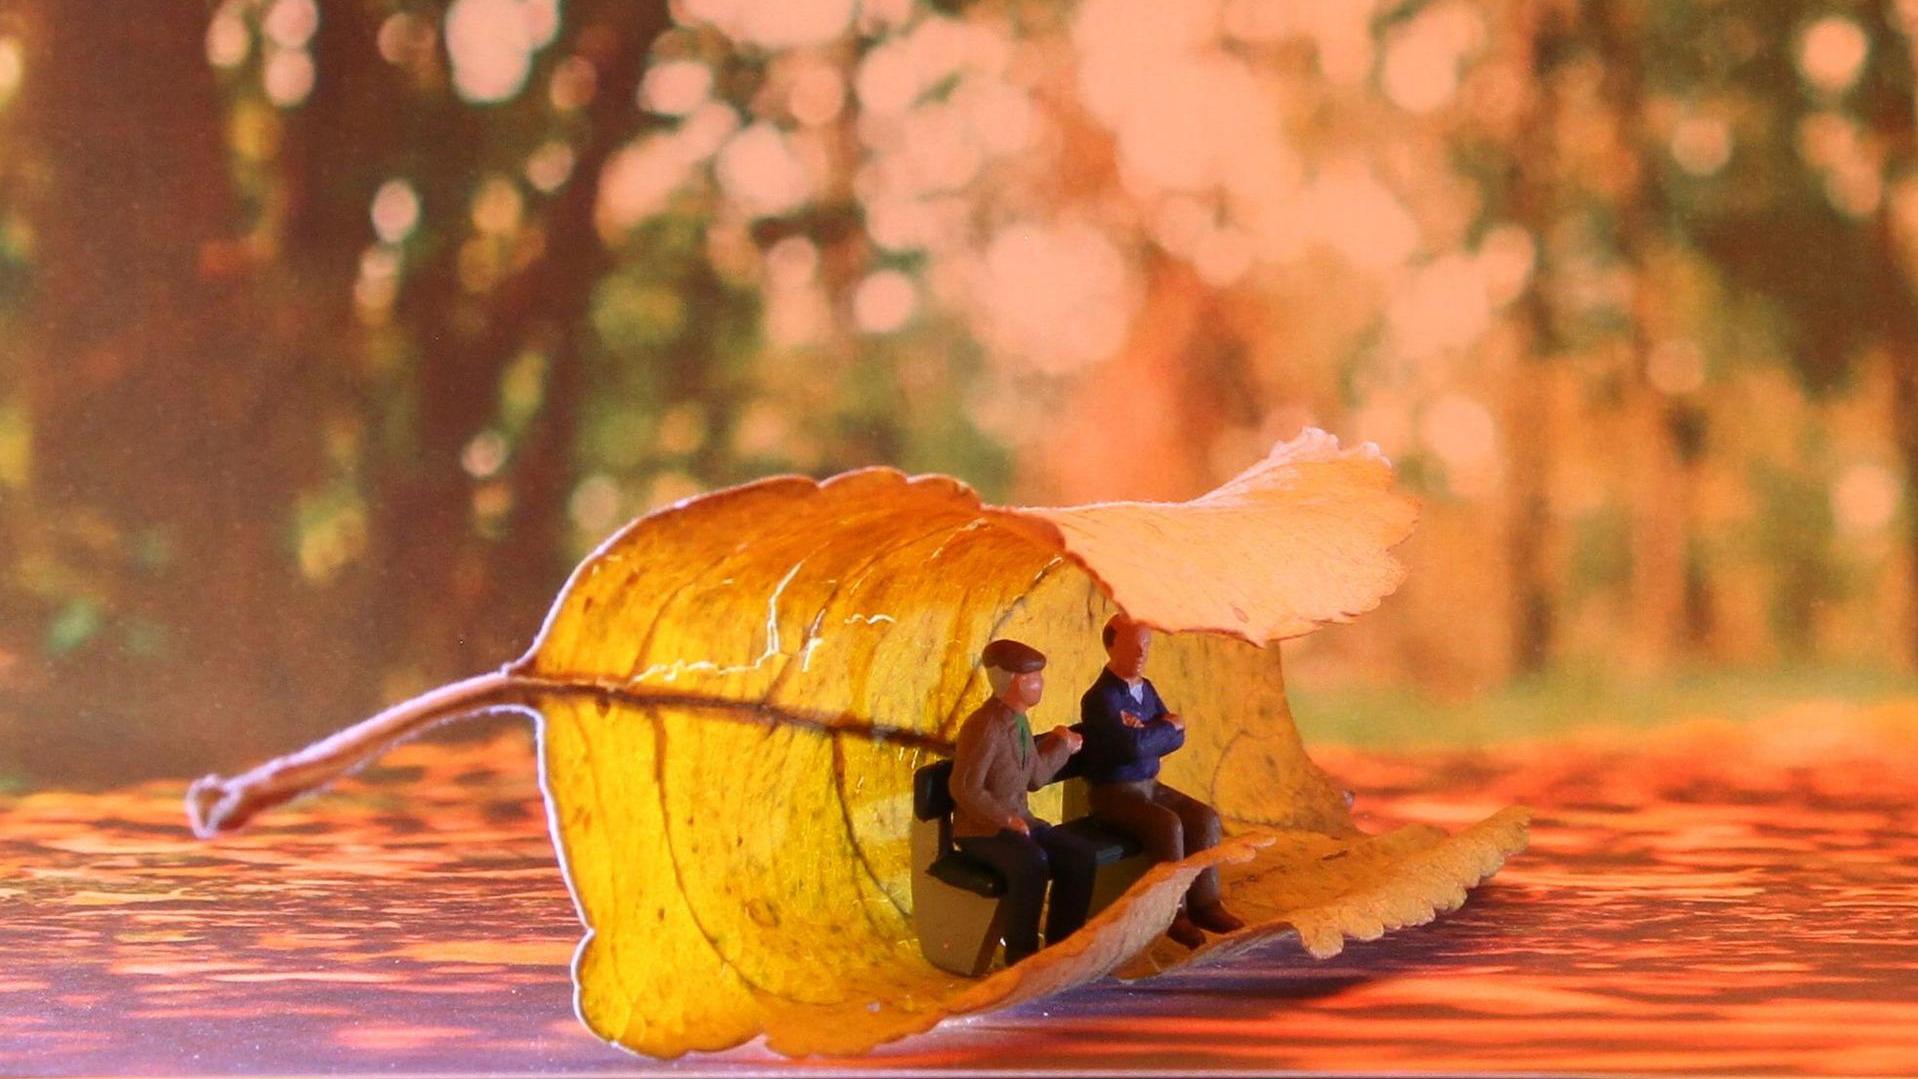 Stimmungsbild zum Beitrag: Es werden Senioren als kleine Figuren sitzend auf einer Bank und eingehüllt in einem Herbstblatt abgebildet.